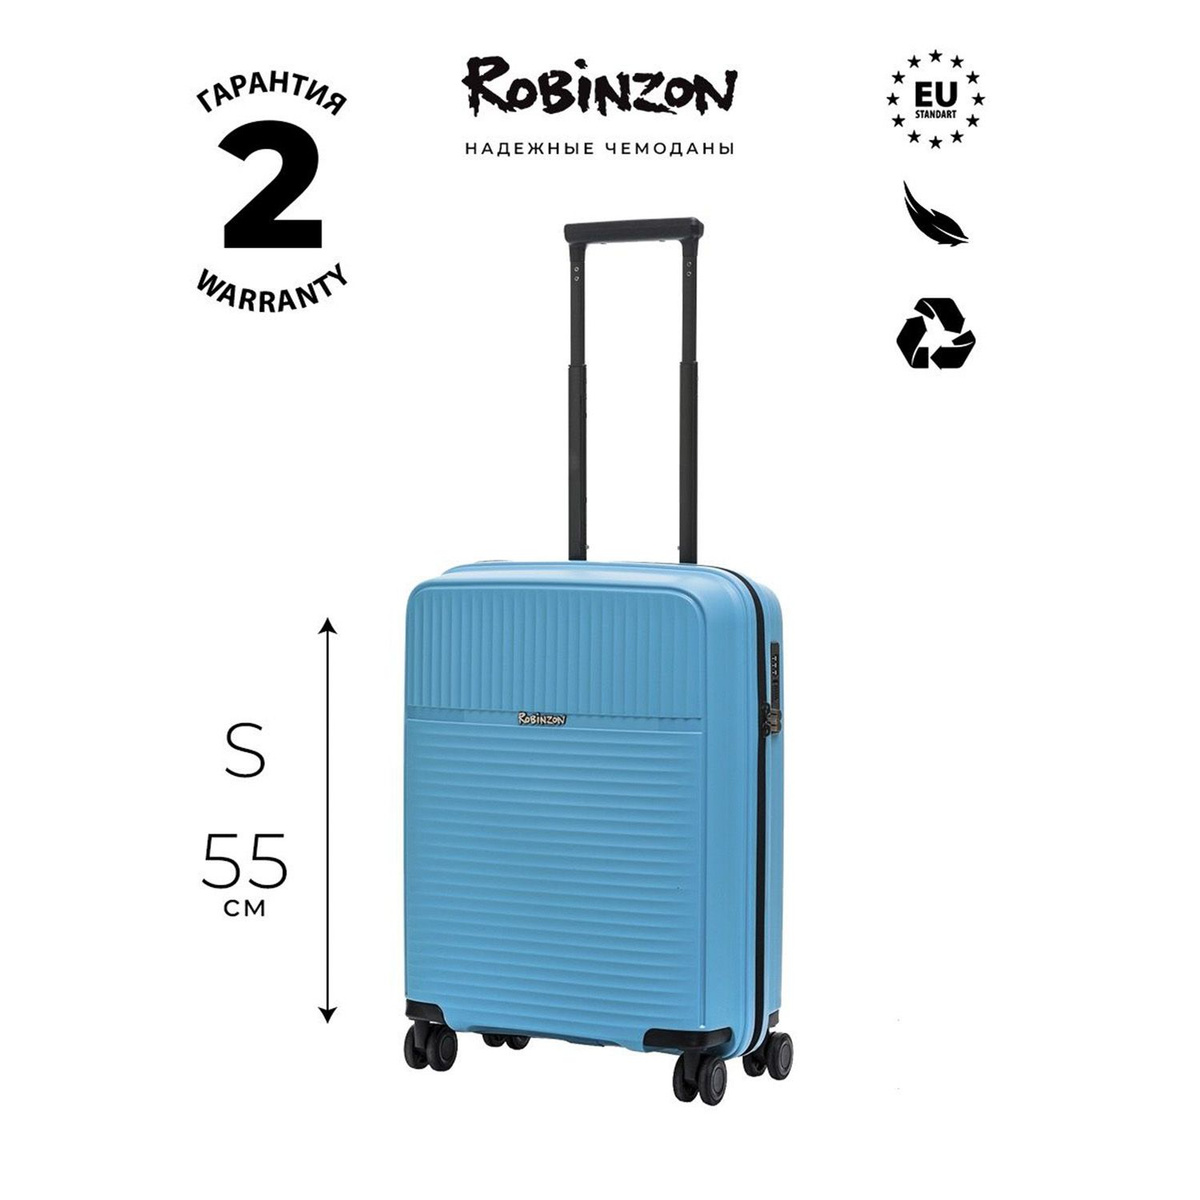 Размер чемодана: 40x55x20 см Вес чемодана: 2,4 кг Объём чемодана: 37 л